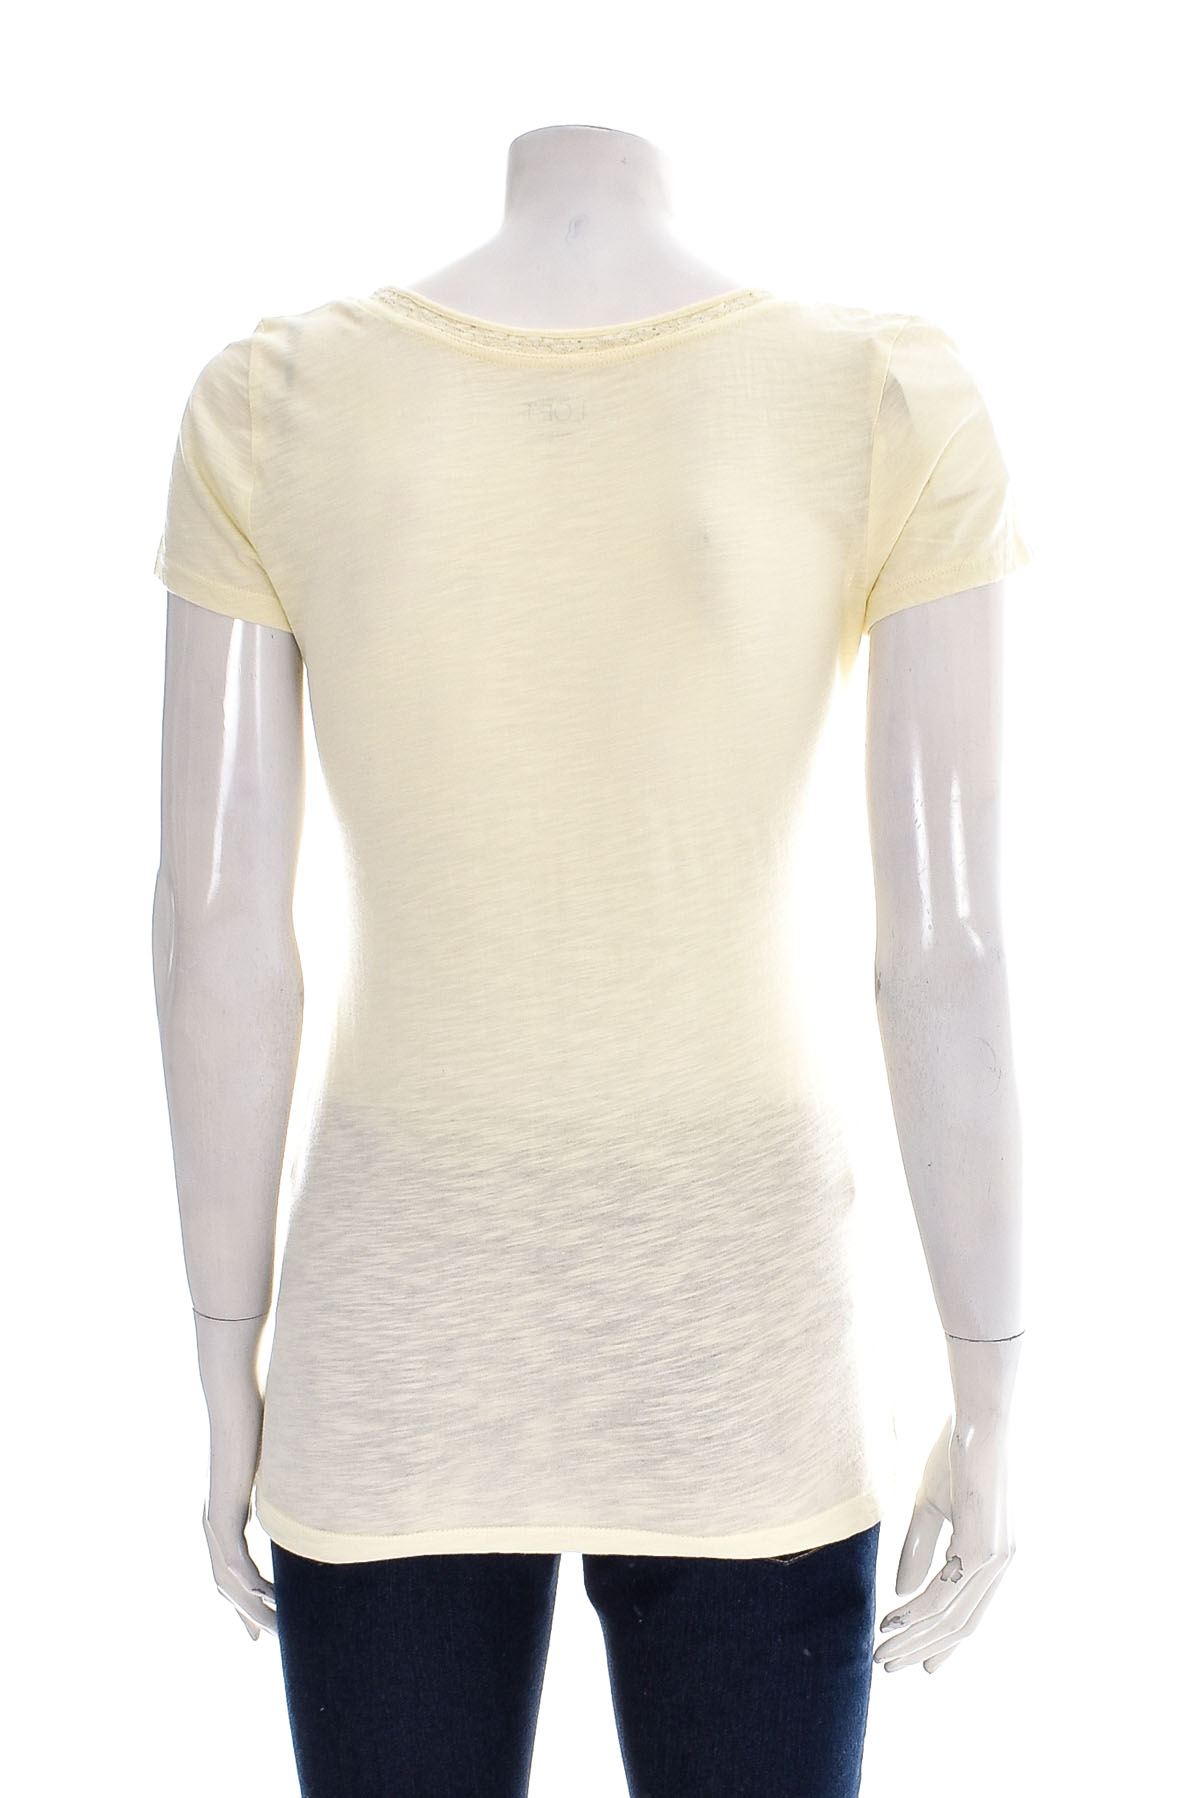 Γυναικείο μπλουζάκι - ANN TAYLOR LOFT - 1